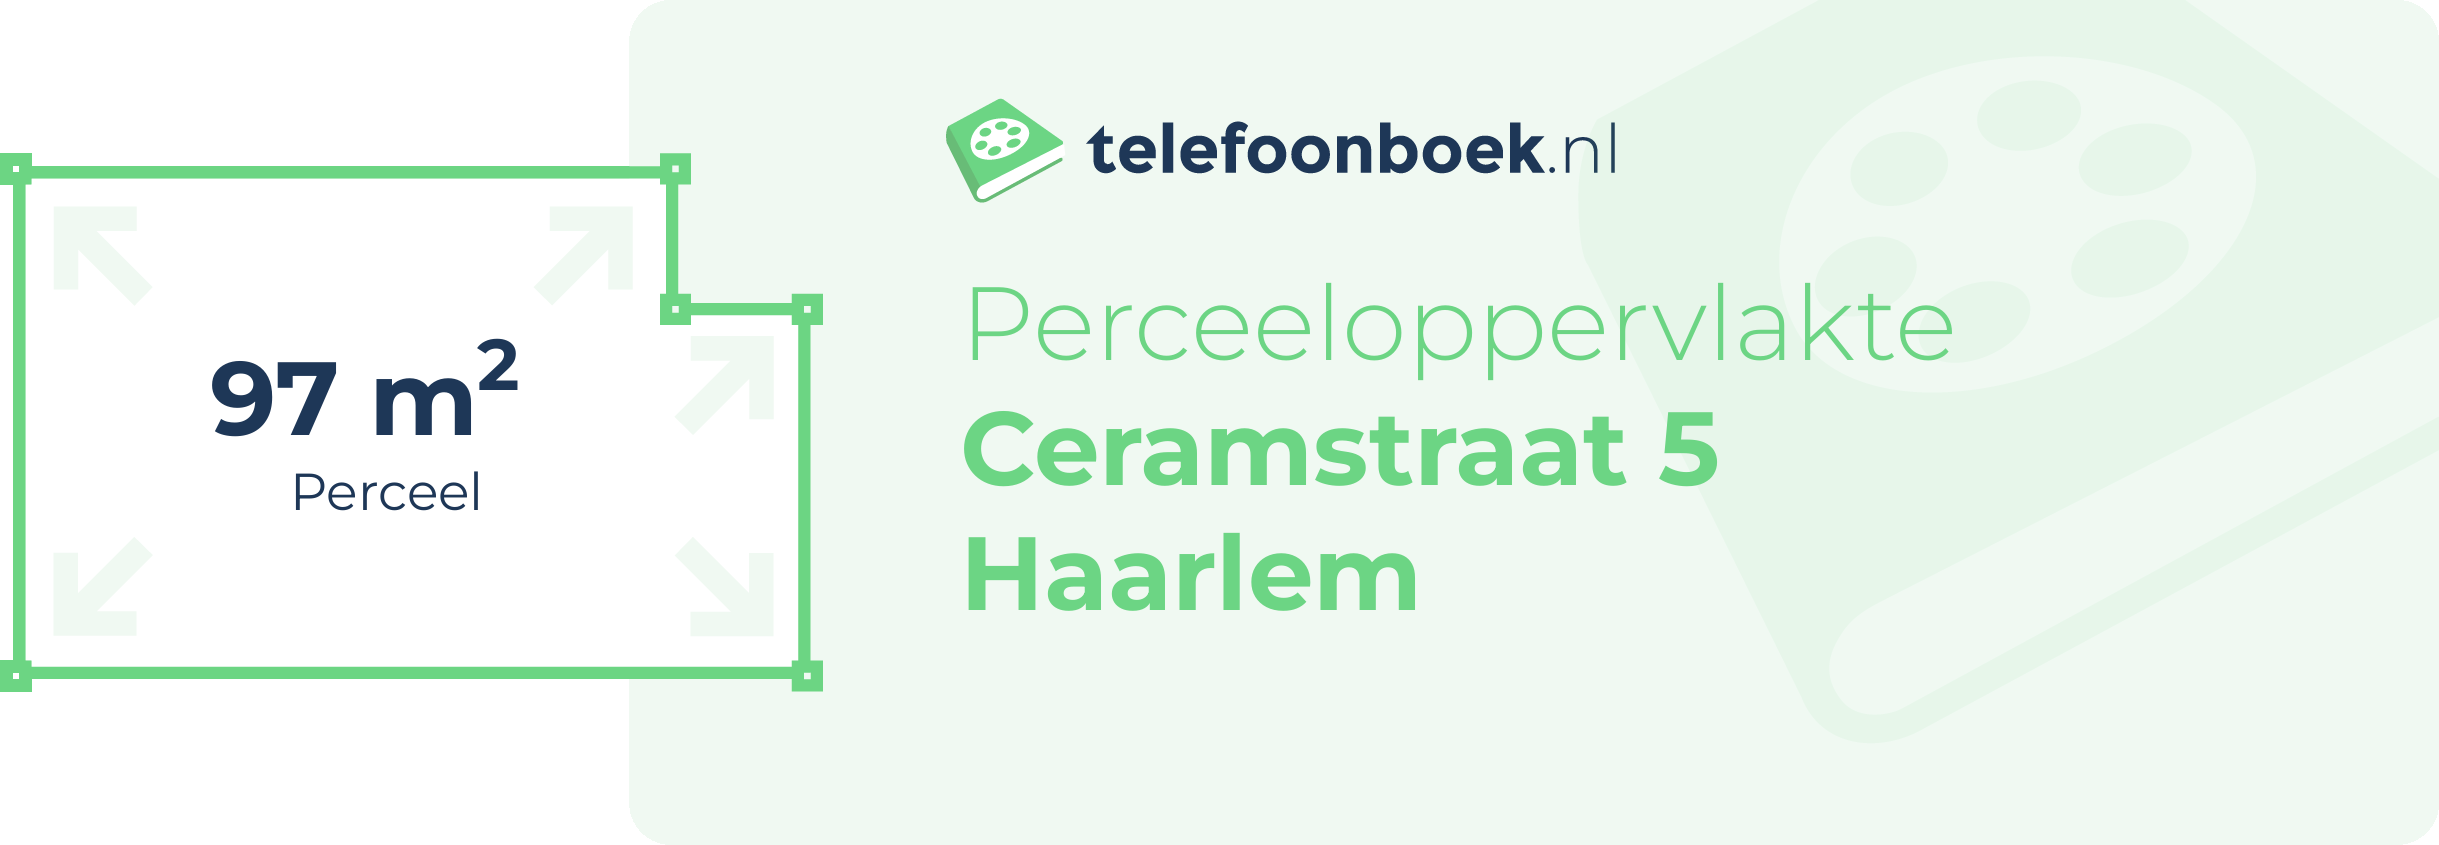 Perceeloppervlakte Ceramstraat 5 Haarlem